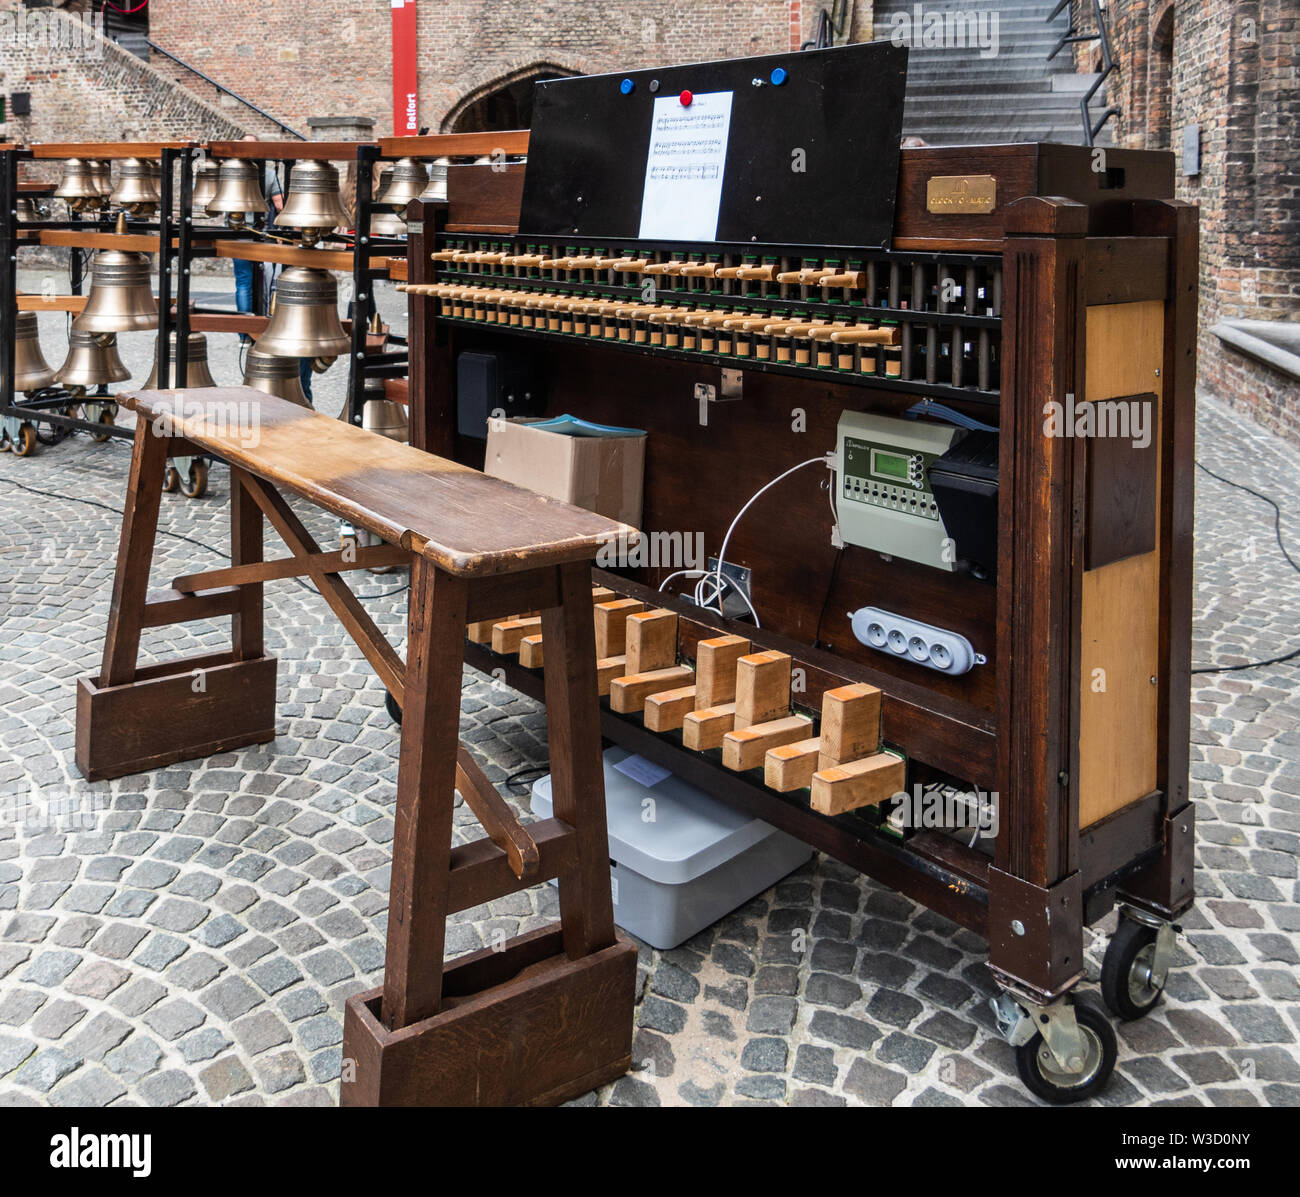 Bruges, Flandre occidentale, Belgique - 15 juin 2019 : Le cerveau et la partie centrale de la Carillon électronique avec clavier, pédales et des matraques sur la place insi Banque D'Images